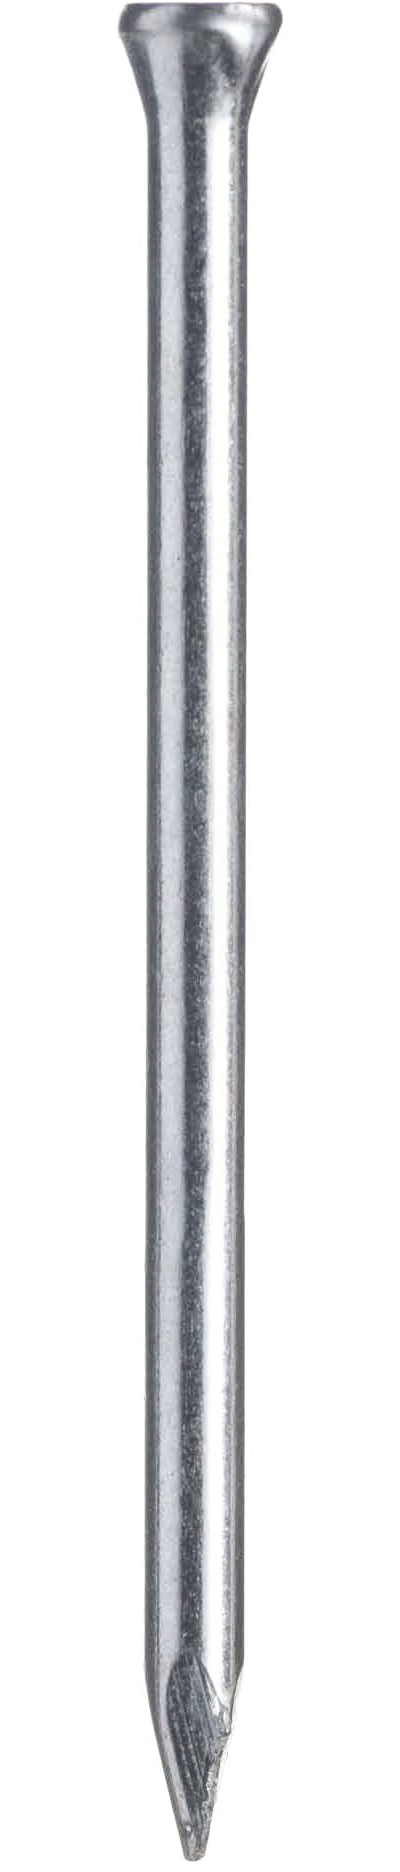 verzinkt 100 Nägel Sockelleistenstifte Bär 1,4 x 20-45mm Spezial Stahlnägel 